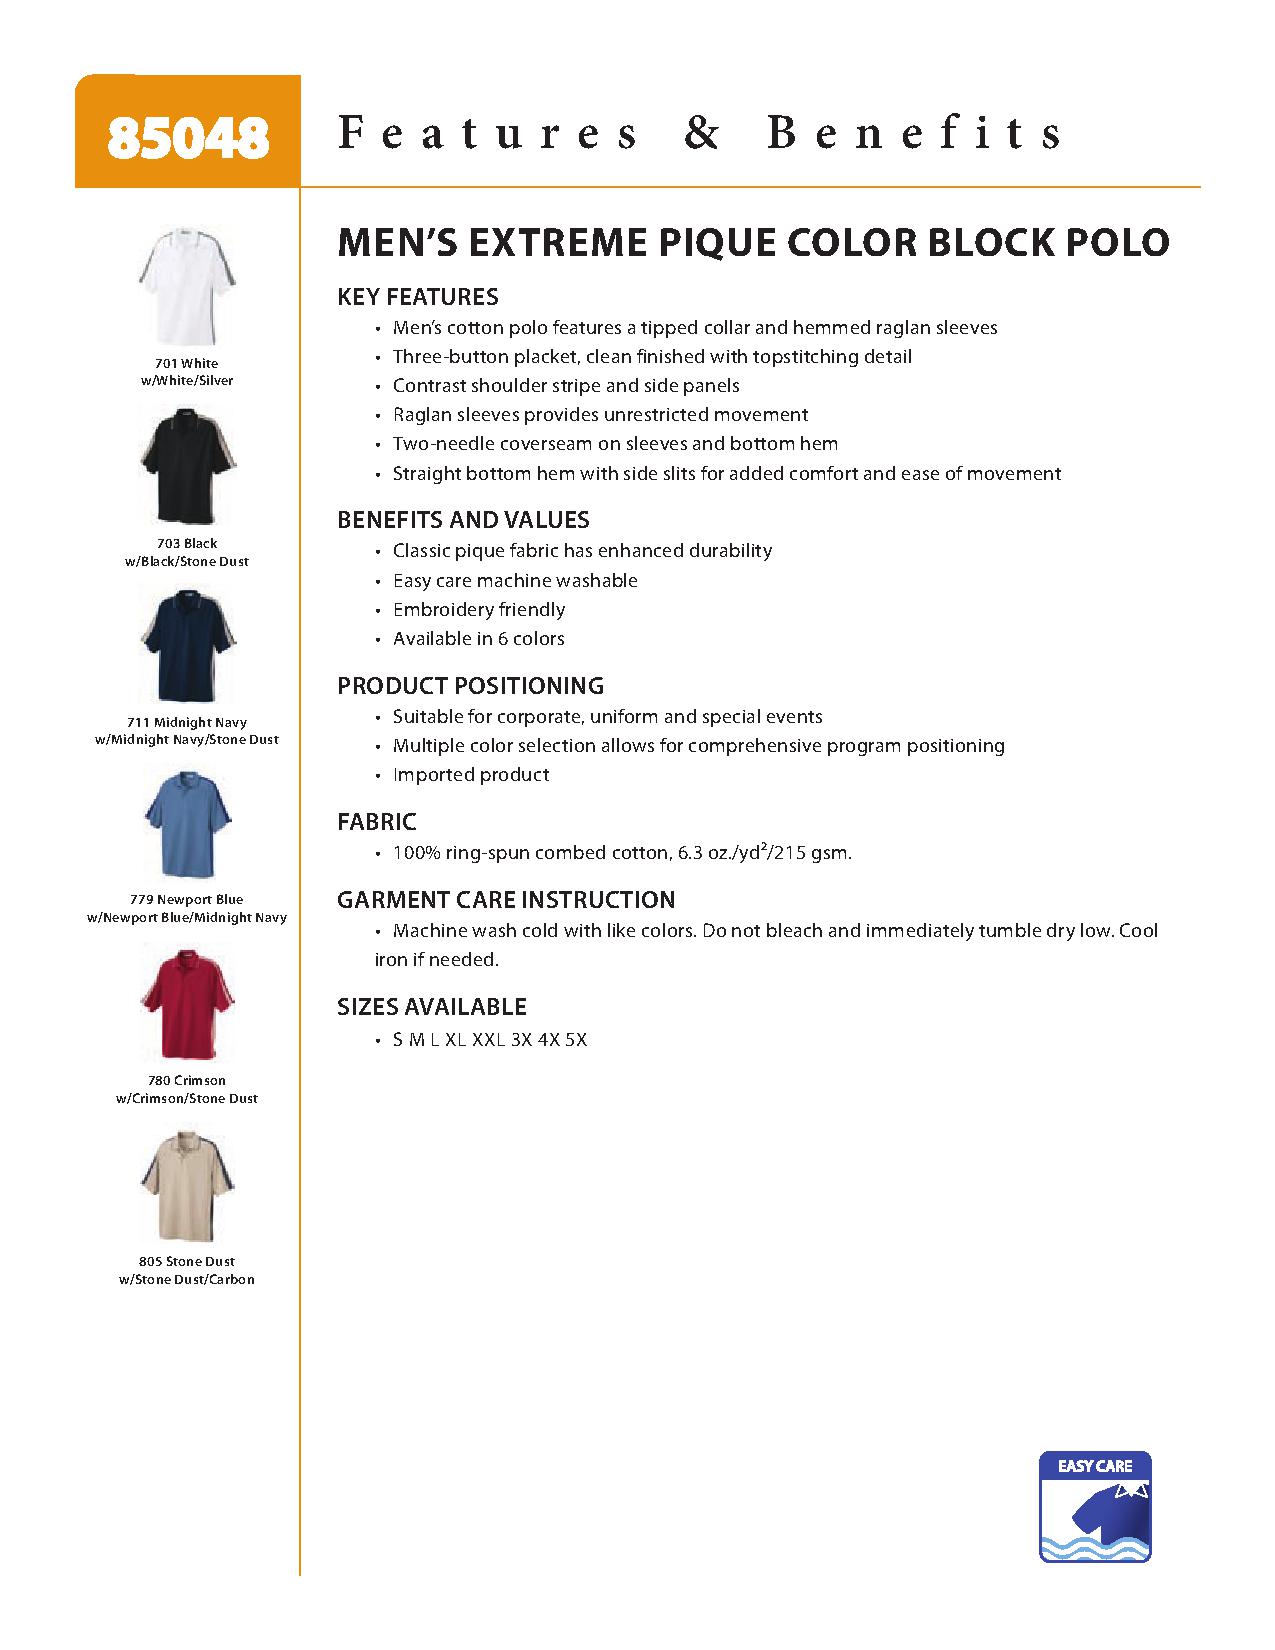 Ash City Pique 85048 - Men's Pique Color-Block Polo